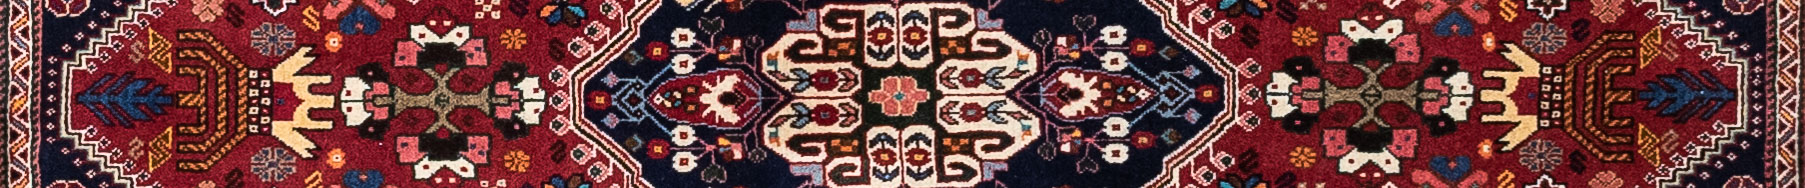 Abadeh Persian Carpet Rug N1Carpet Canada Montreal Tapis Persan 590